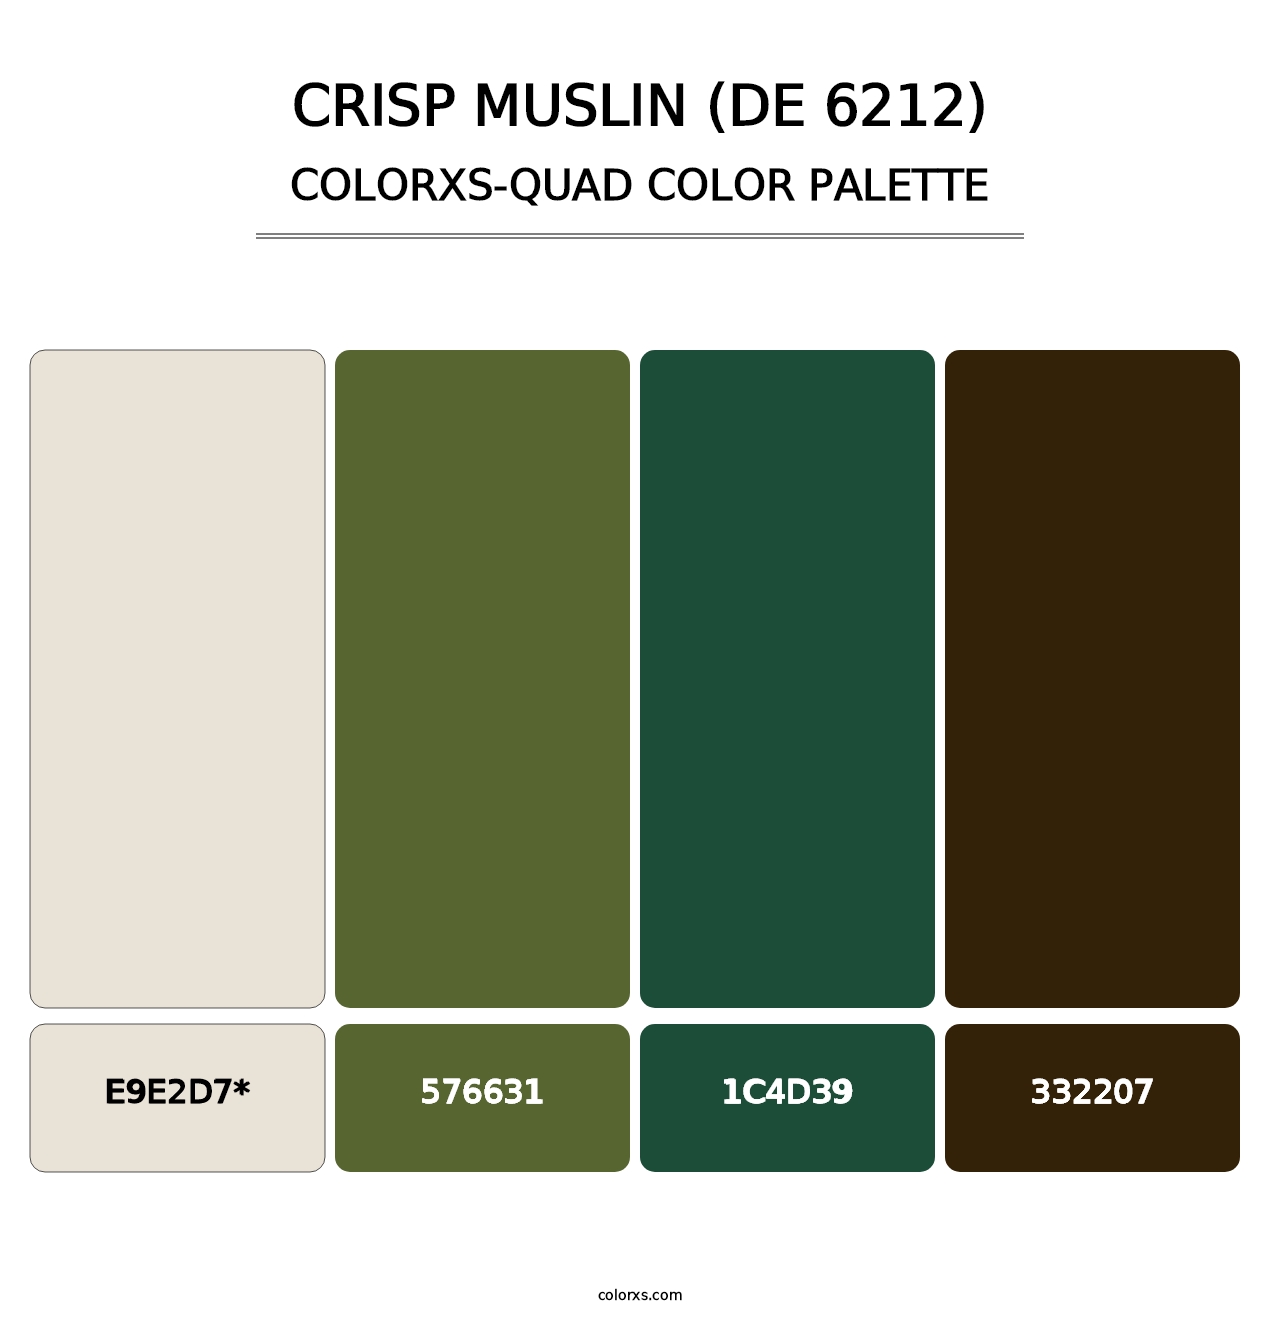 Crisp Muslin (DE 6212) - Colorxs Quad Palette